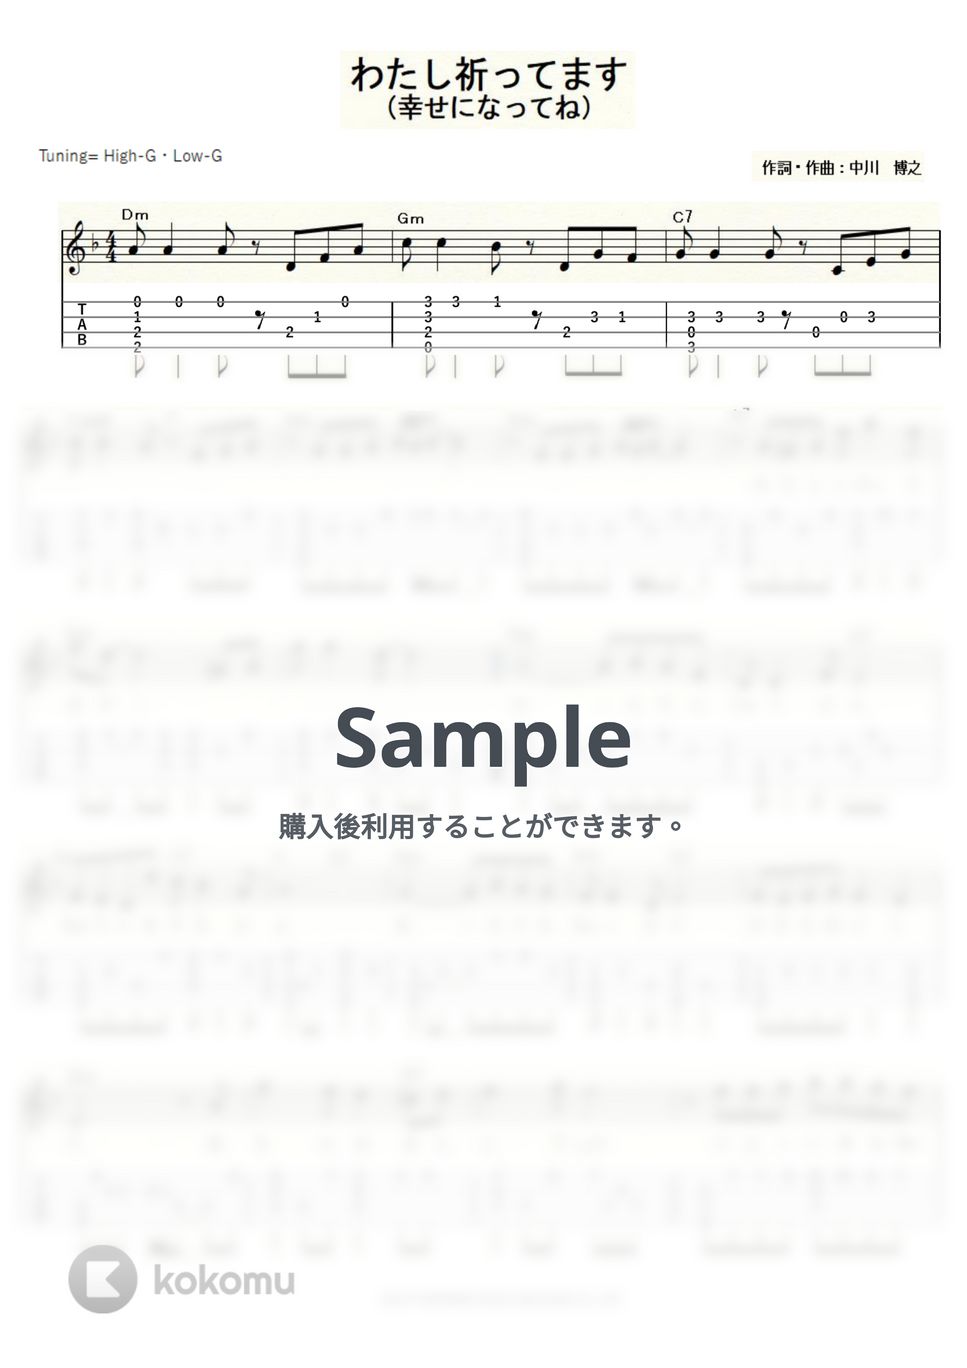 敏いとうとハッピー＆ブルー - わたし祈ってます (ｳｸﾚﾚｿﾛ/High-G・Low-G/中級) by ukulelepapa